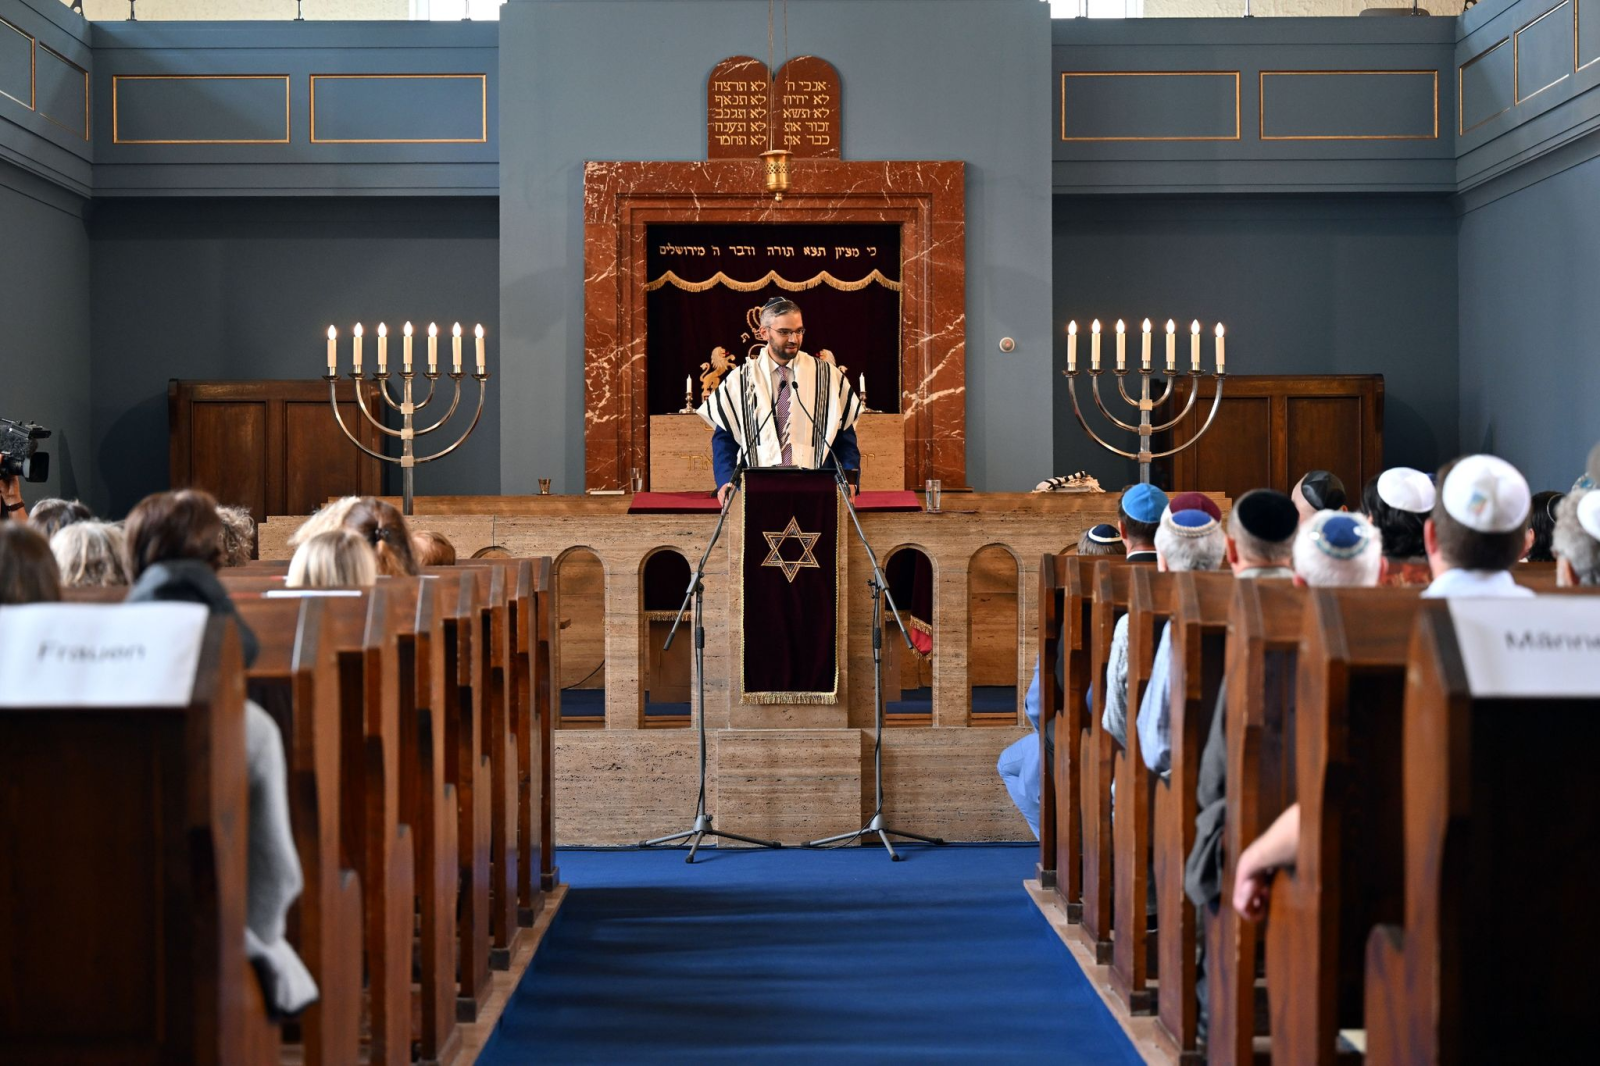 Landesrabbiner Alexander Nachama begrüßt die Gäste der Veranstaltung zum 70-jährigen Bestehen der Synagoge.